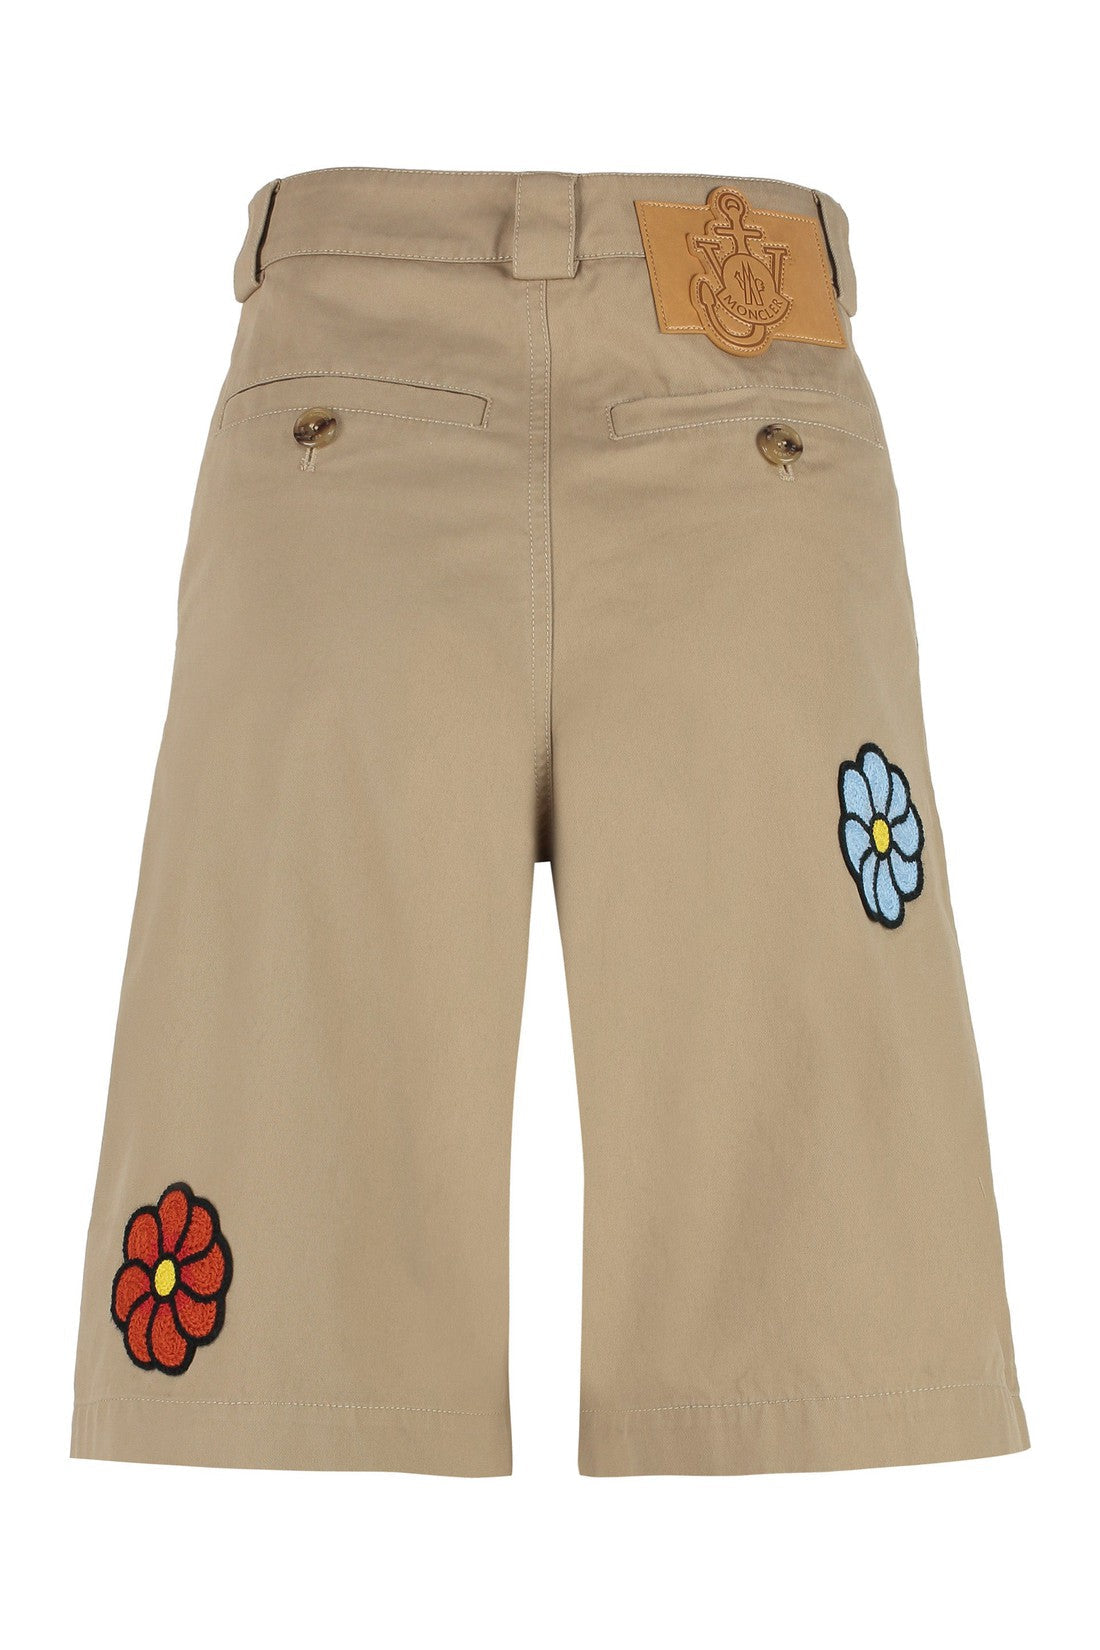 Moncler Genius-OUTLET-SALE-1 Moncler x JW Anderson - Cotton bermuda shorts-ARCHIVIST